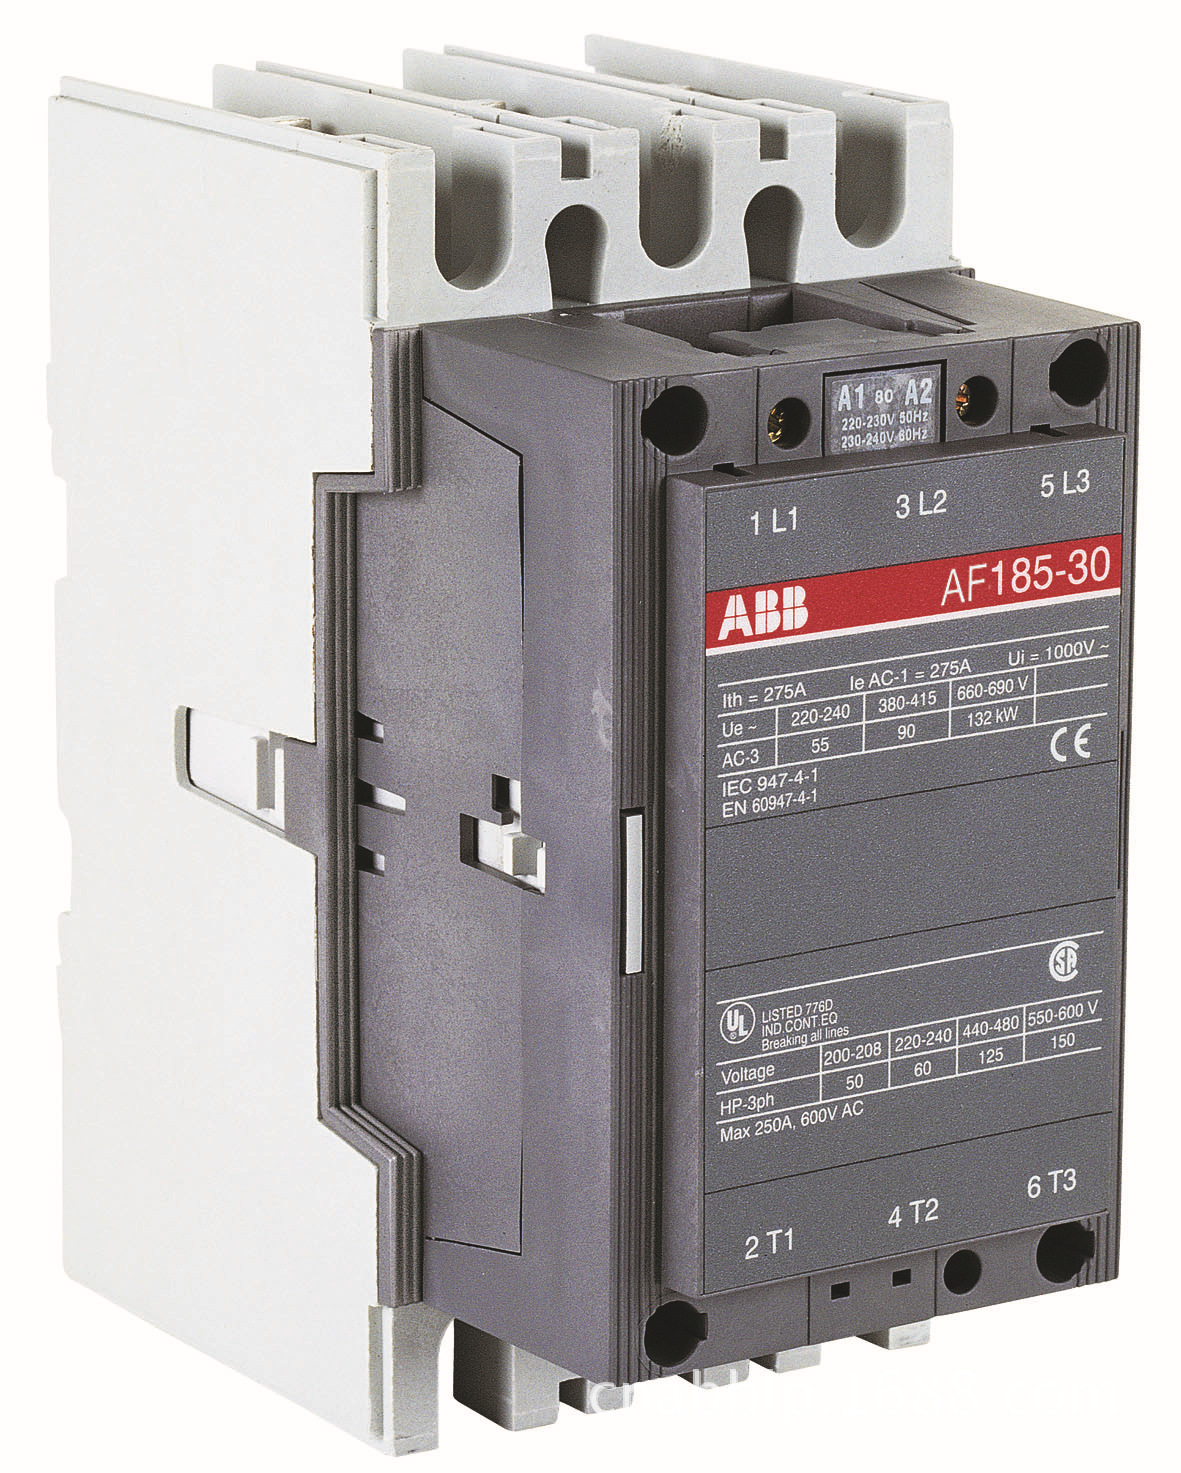 ABB切换电容器用接触器UA110-30-11